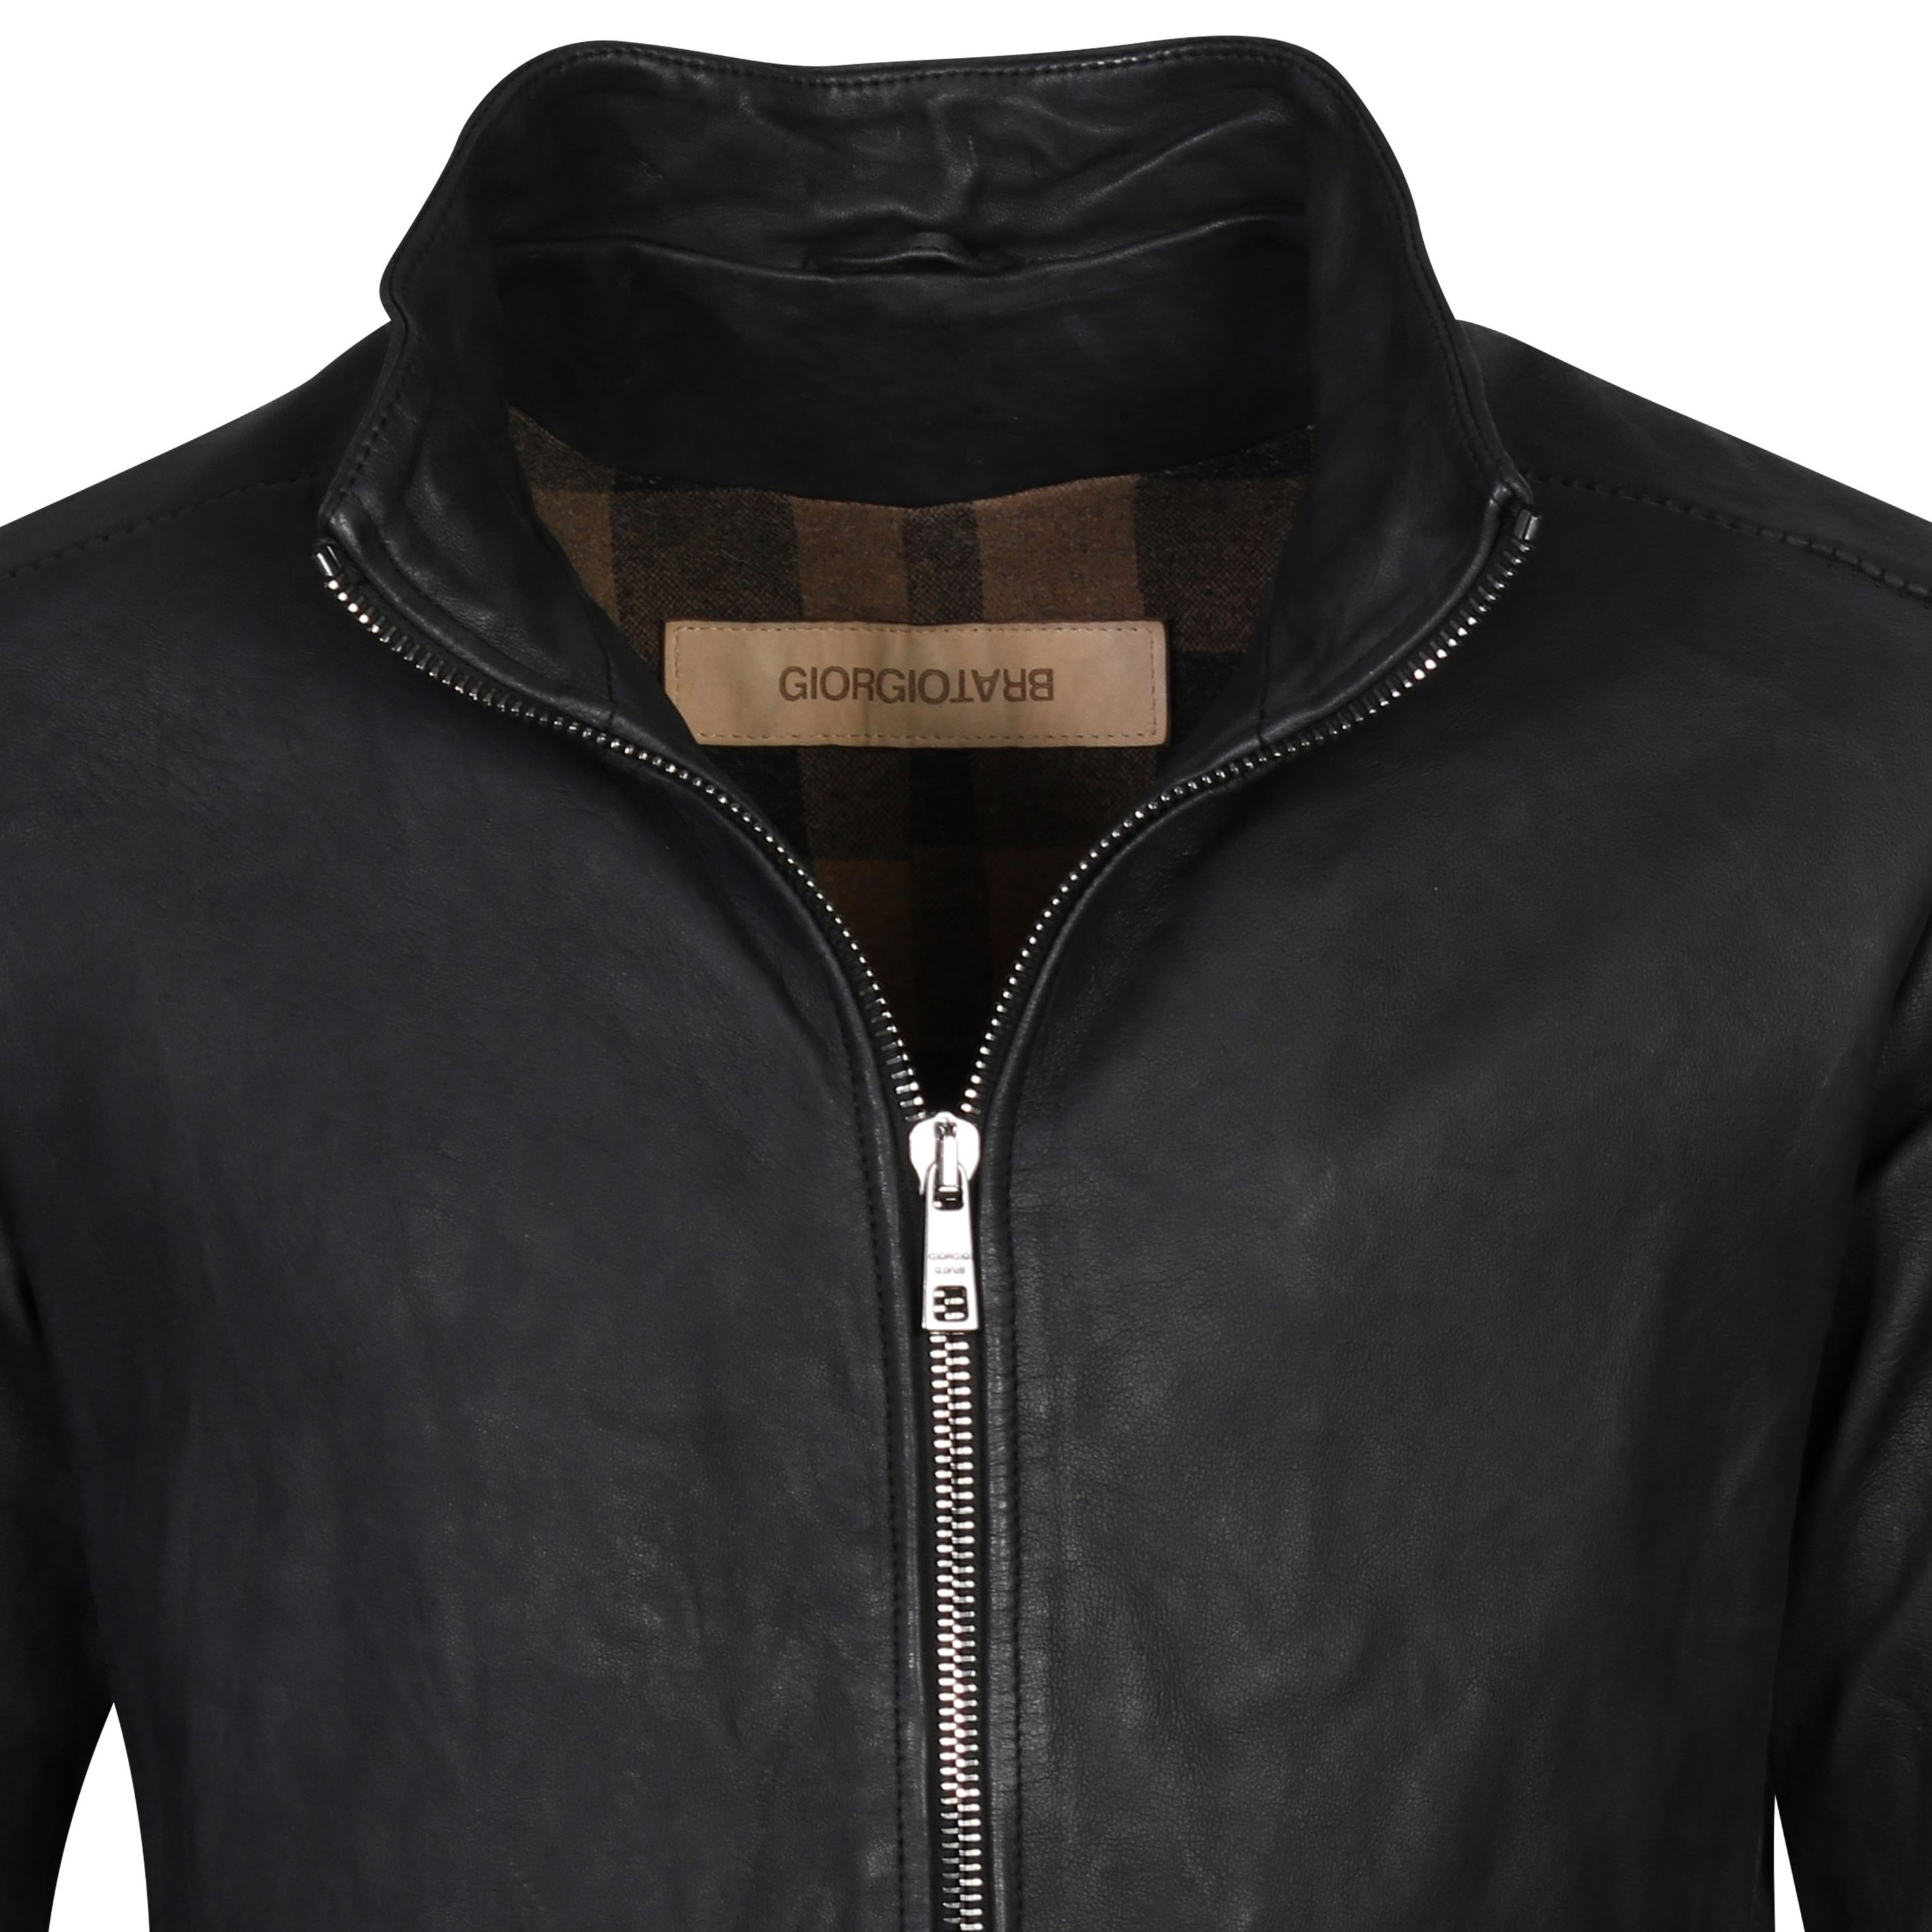 Giorgio Brato Leather Jacket Washed Black 48